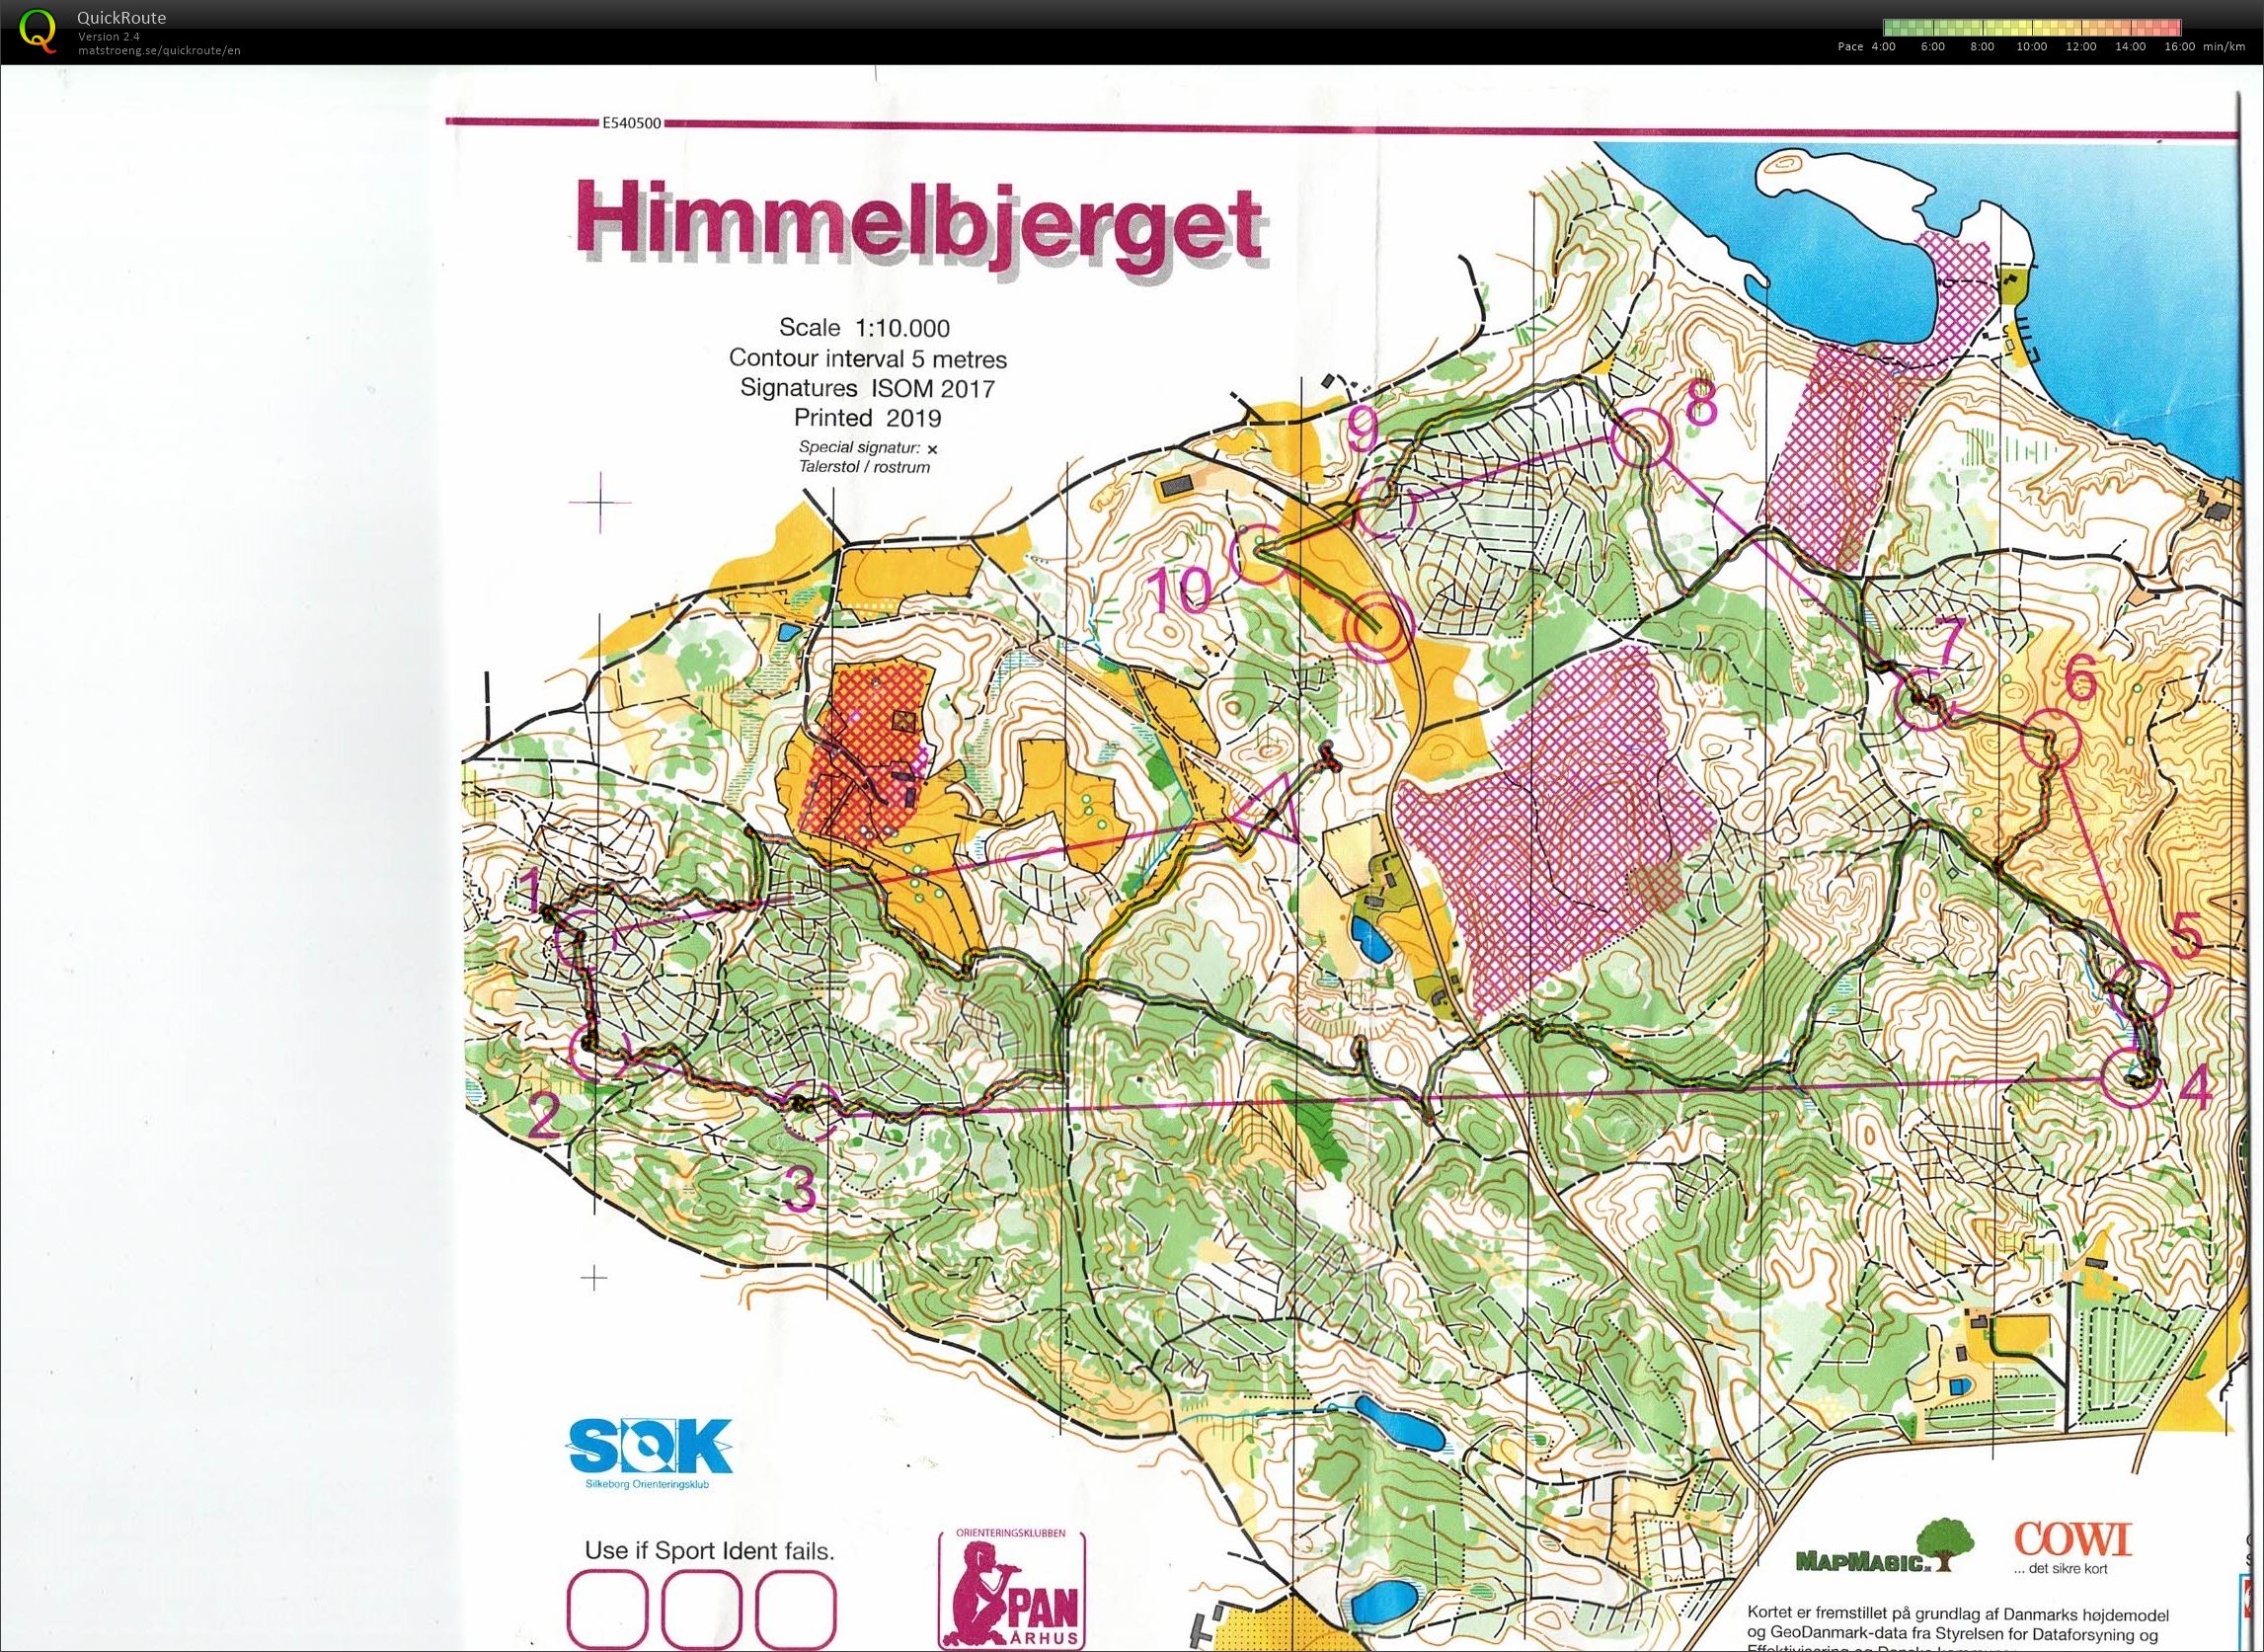 Himmelbjerget, JWOC testløb, Bane Åben 4, Pia Gade, 090619 (09/06/2019)